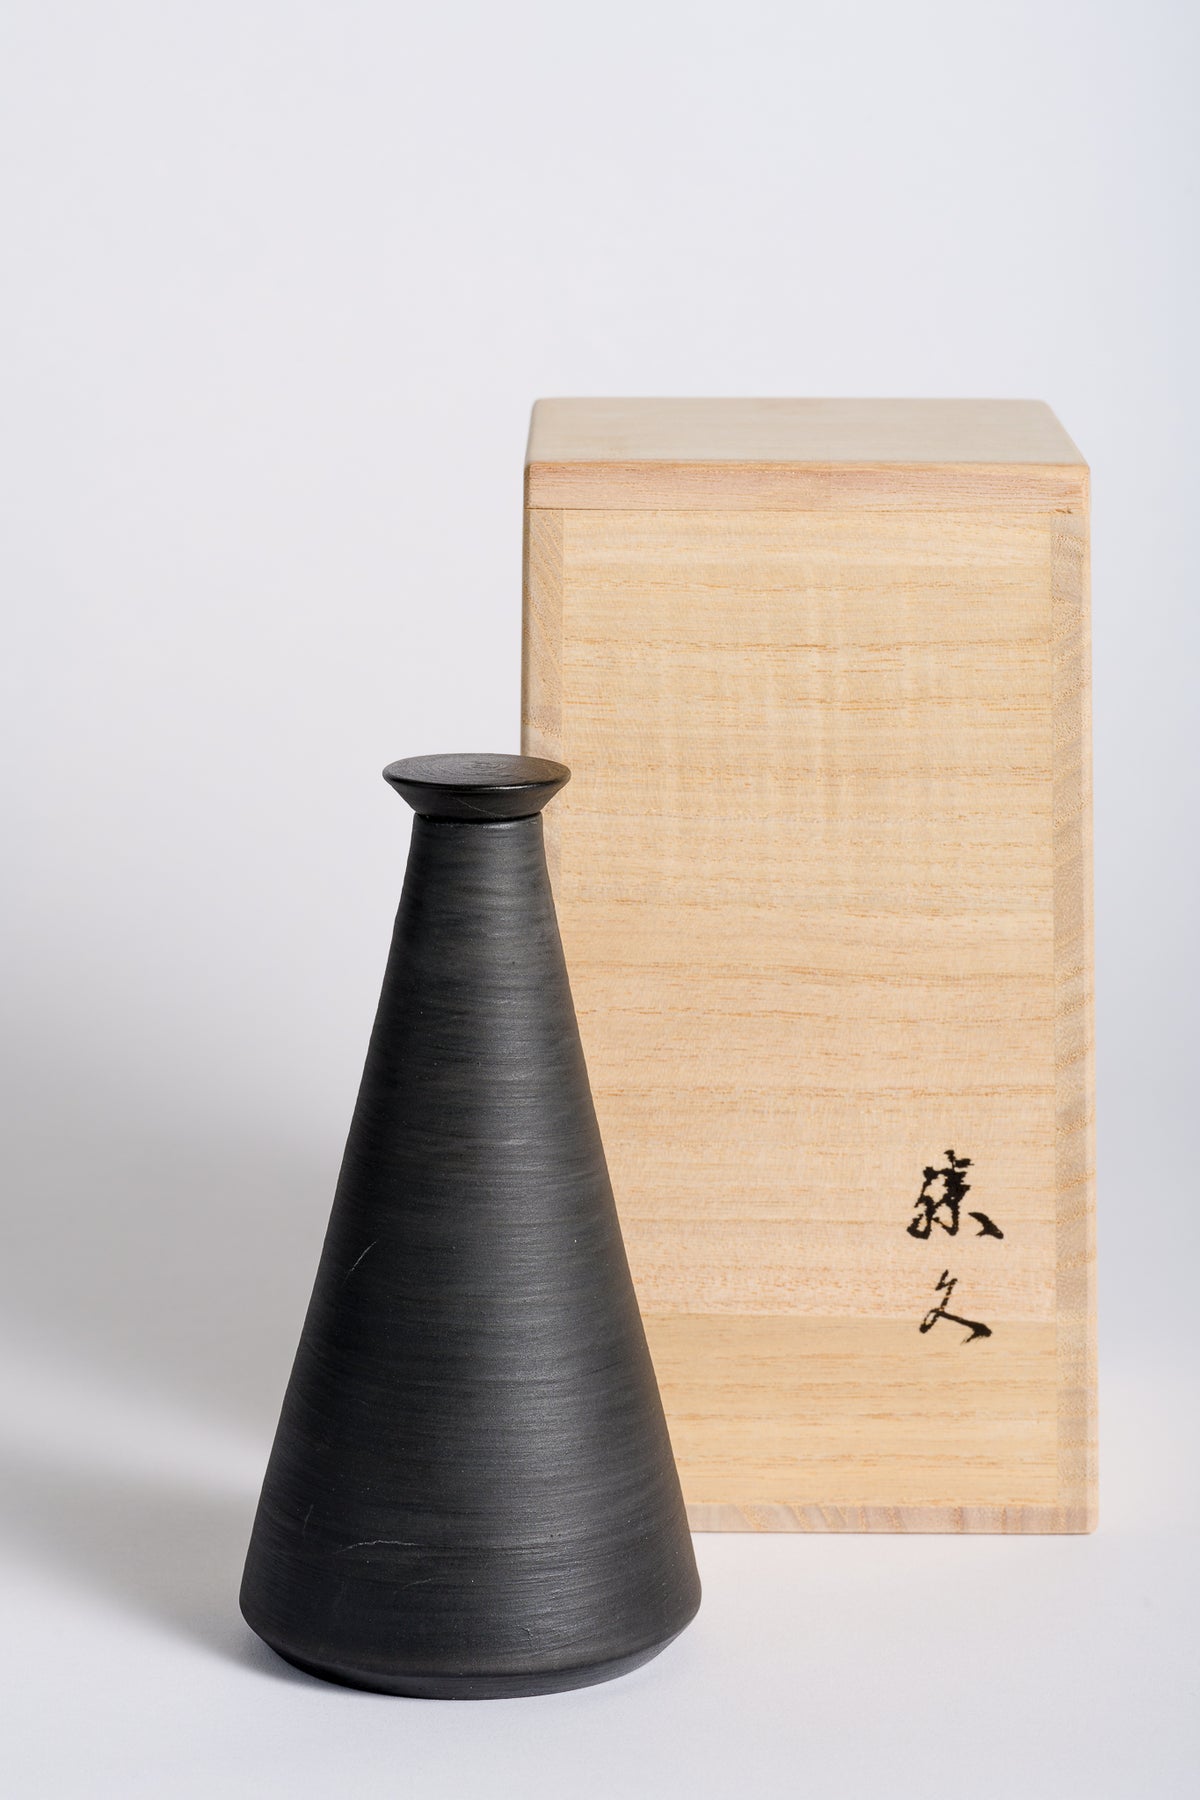 Katuhisa Kitano 設計的 SHHH 獨家限量版陶瓷瓶